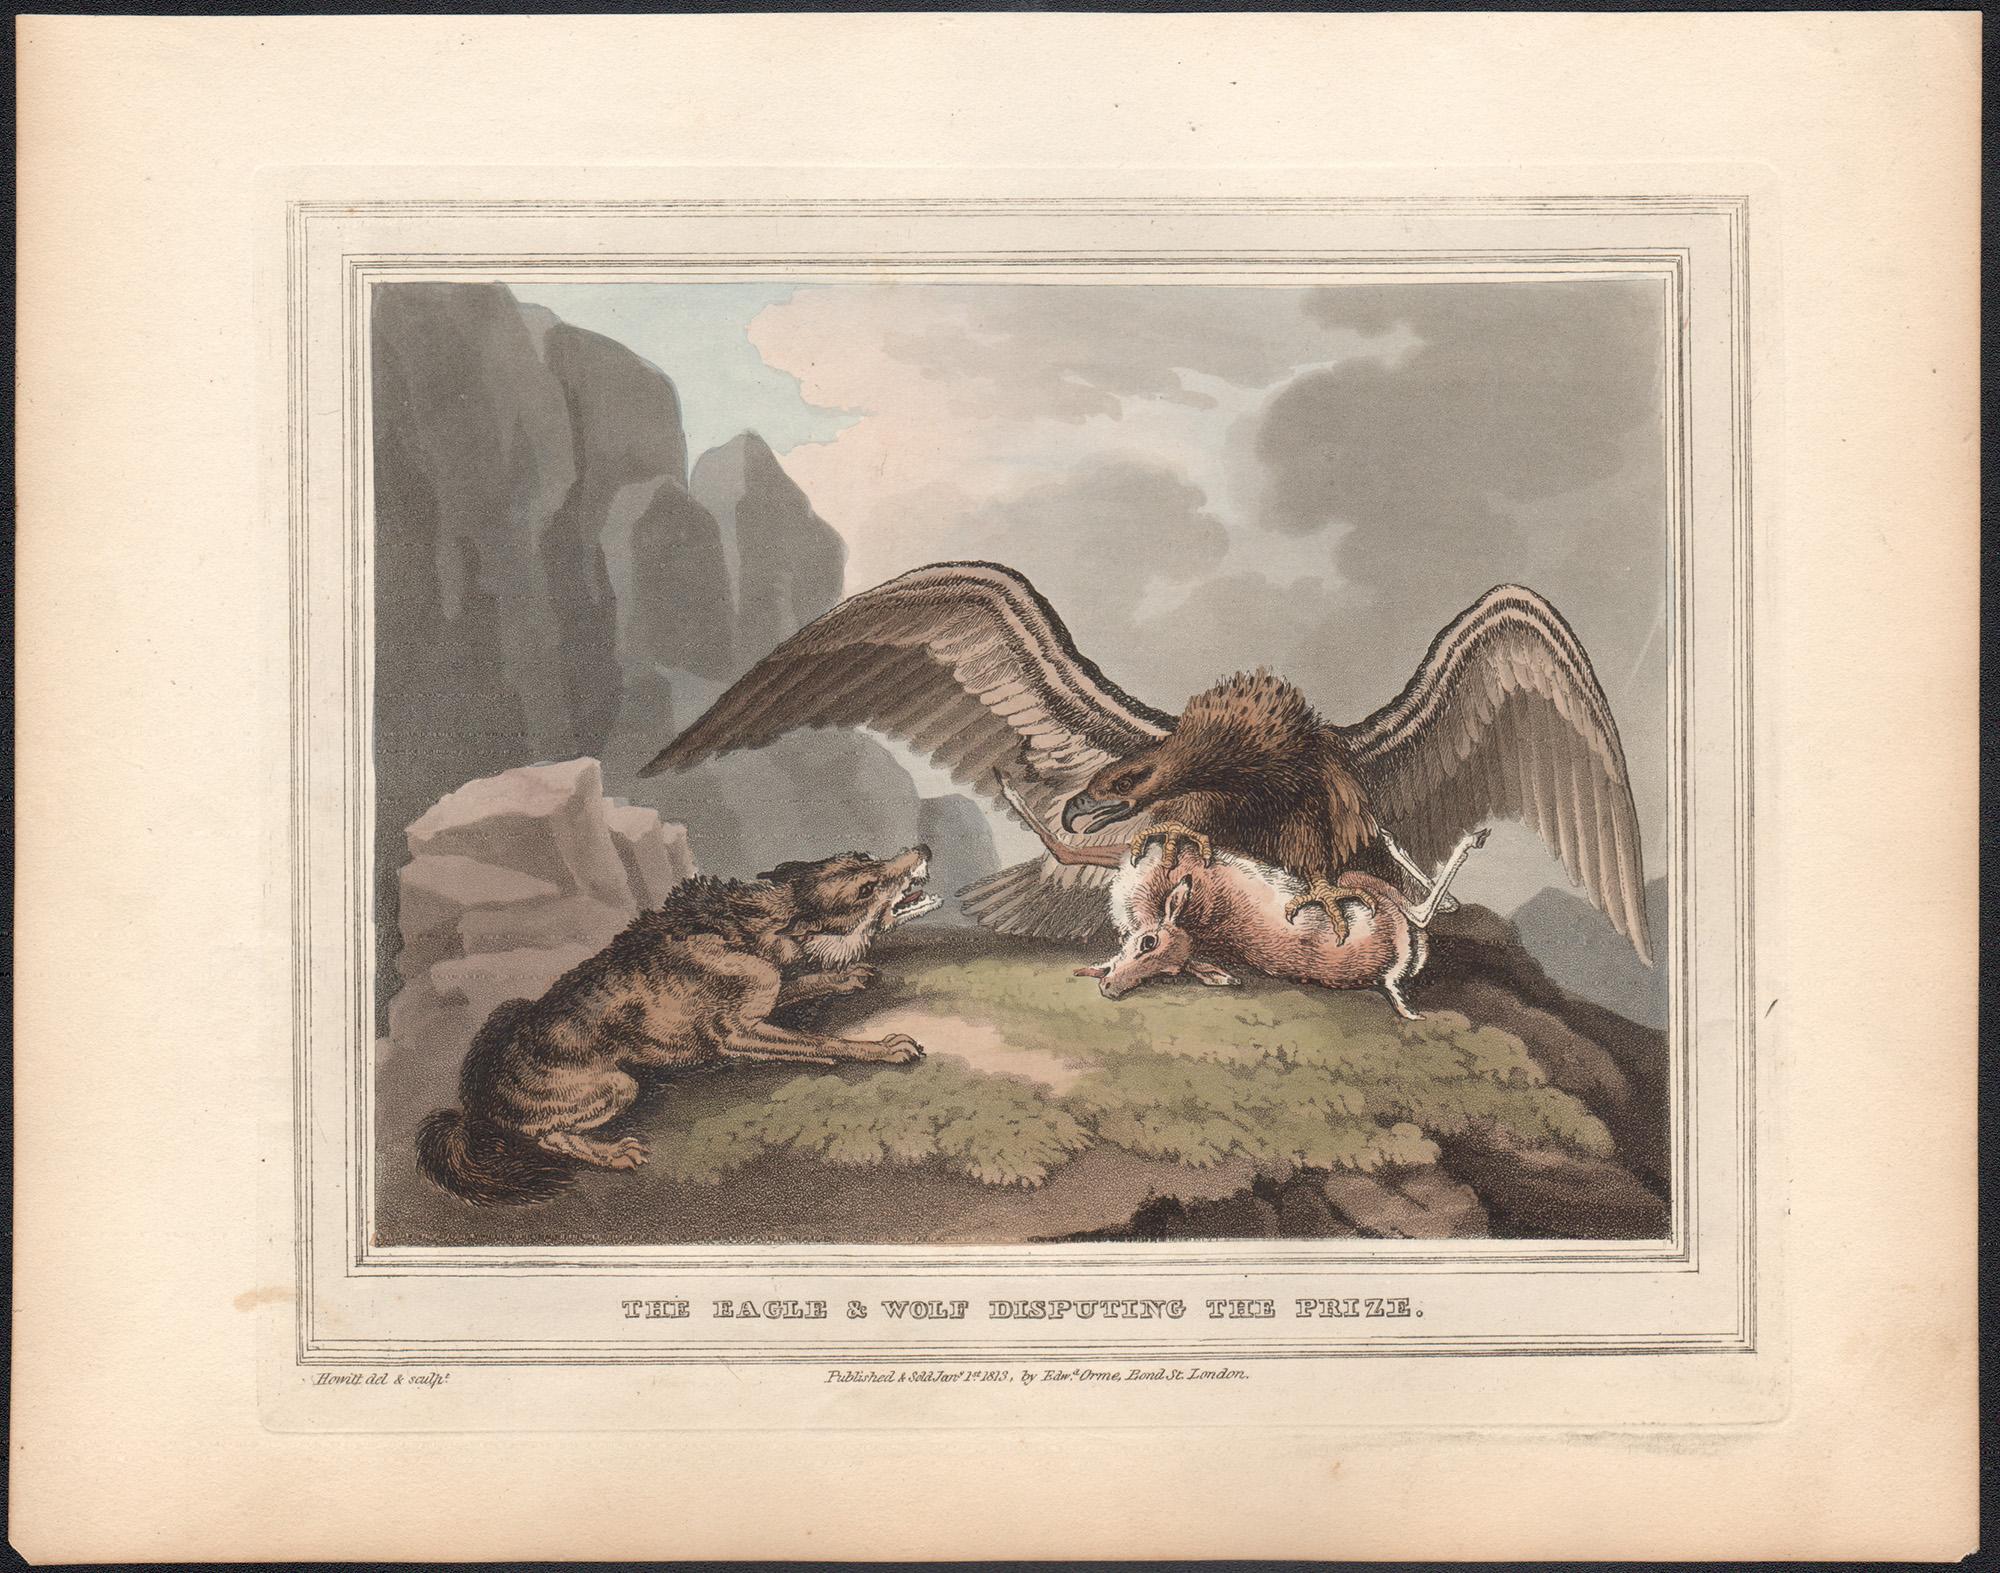 L'aigle et le loup dévaluant le prix, gravure à l'aquatinte de chasse, 1813 - Print de Samuel Howitt